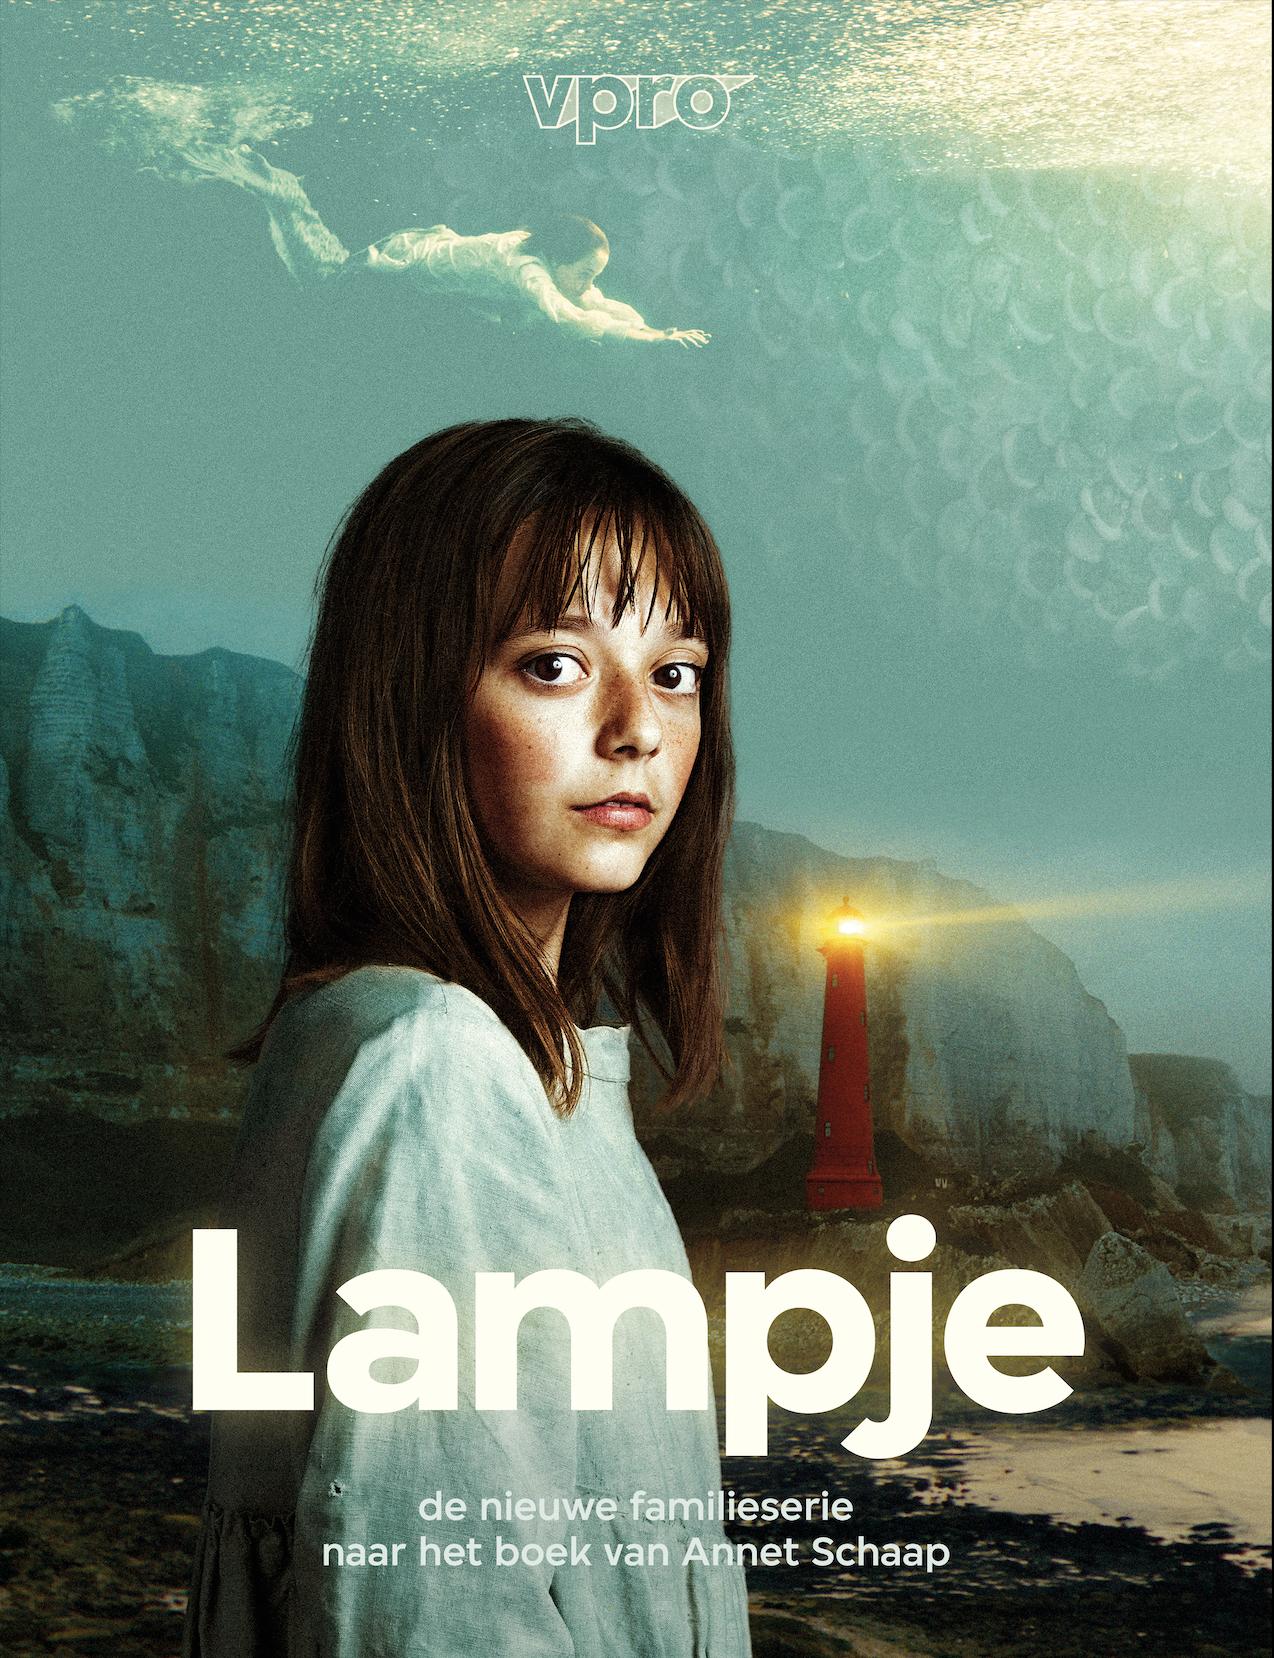 TV ratings for Lampje in Thailand. VPRO TV series